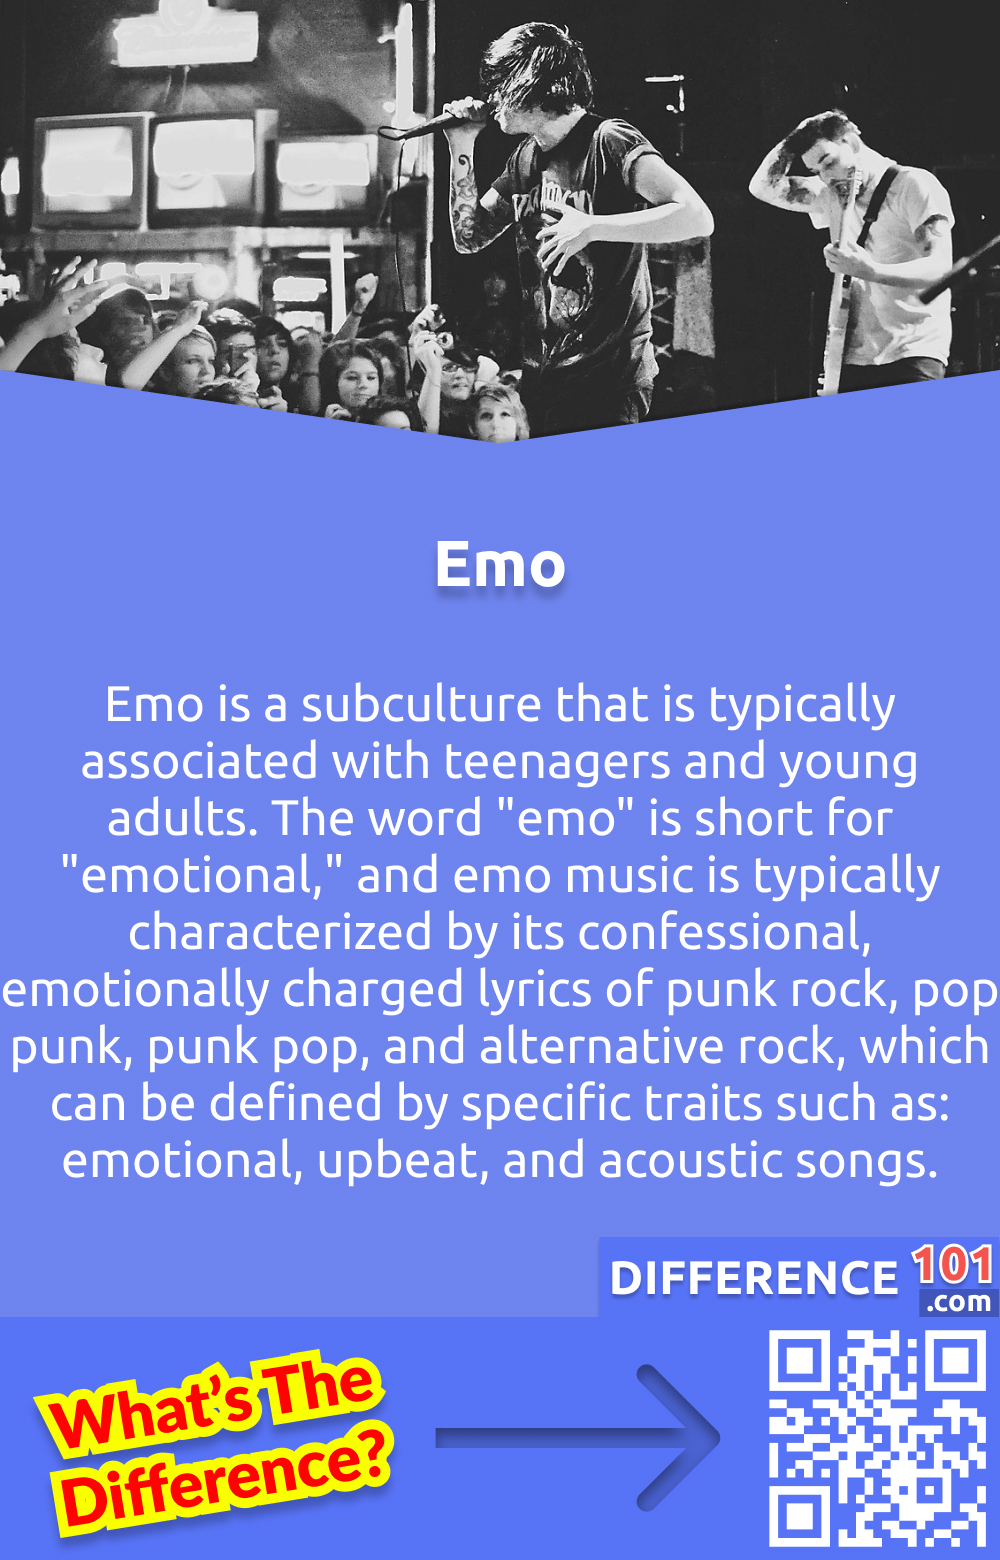 O que é Emo? Emo é uma subcultura tipicamente associada a adolescentes e jovens adultos. A palavra u0022emou0022 é a abreviação de u0022emotional,u0022 e música emocional é tipicamente caracterizada por sua letra confessional, emocionalmente carregada de punk rock, pop punk, punk pop e rock alternativo, que pode ser definida por traços específicos, tais como: canções emocionais, upbeat e acústicas. O Emo é normalmente interpretado por cantores ou grupos com vocais emocionais.nEmo a moda é freqüentemente caracterizada por jeans apertados, roupas pretas e cabelos tingidos. A cultura emotiva é freqüentemente associada à angústia, depressão e solidão.